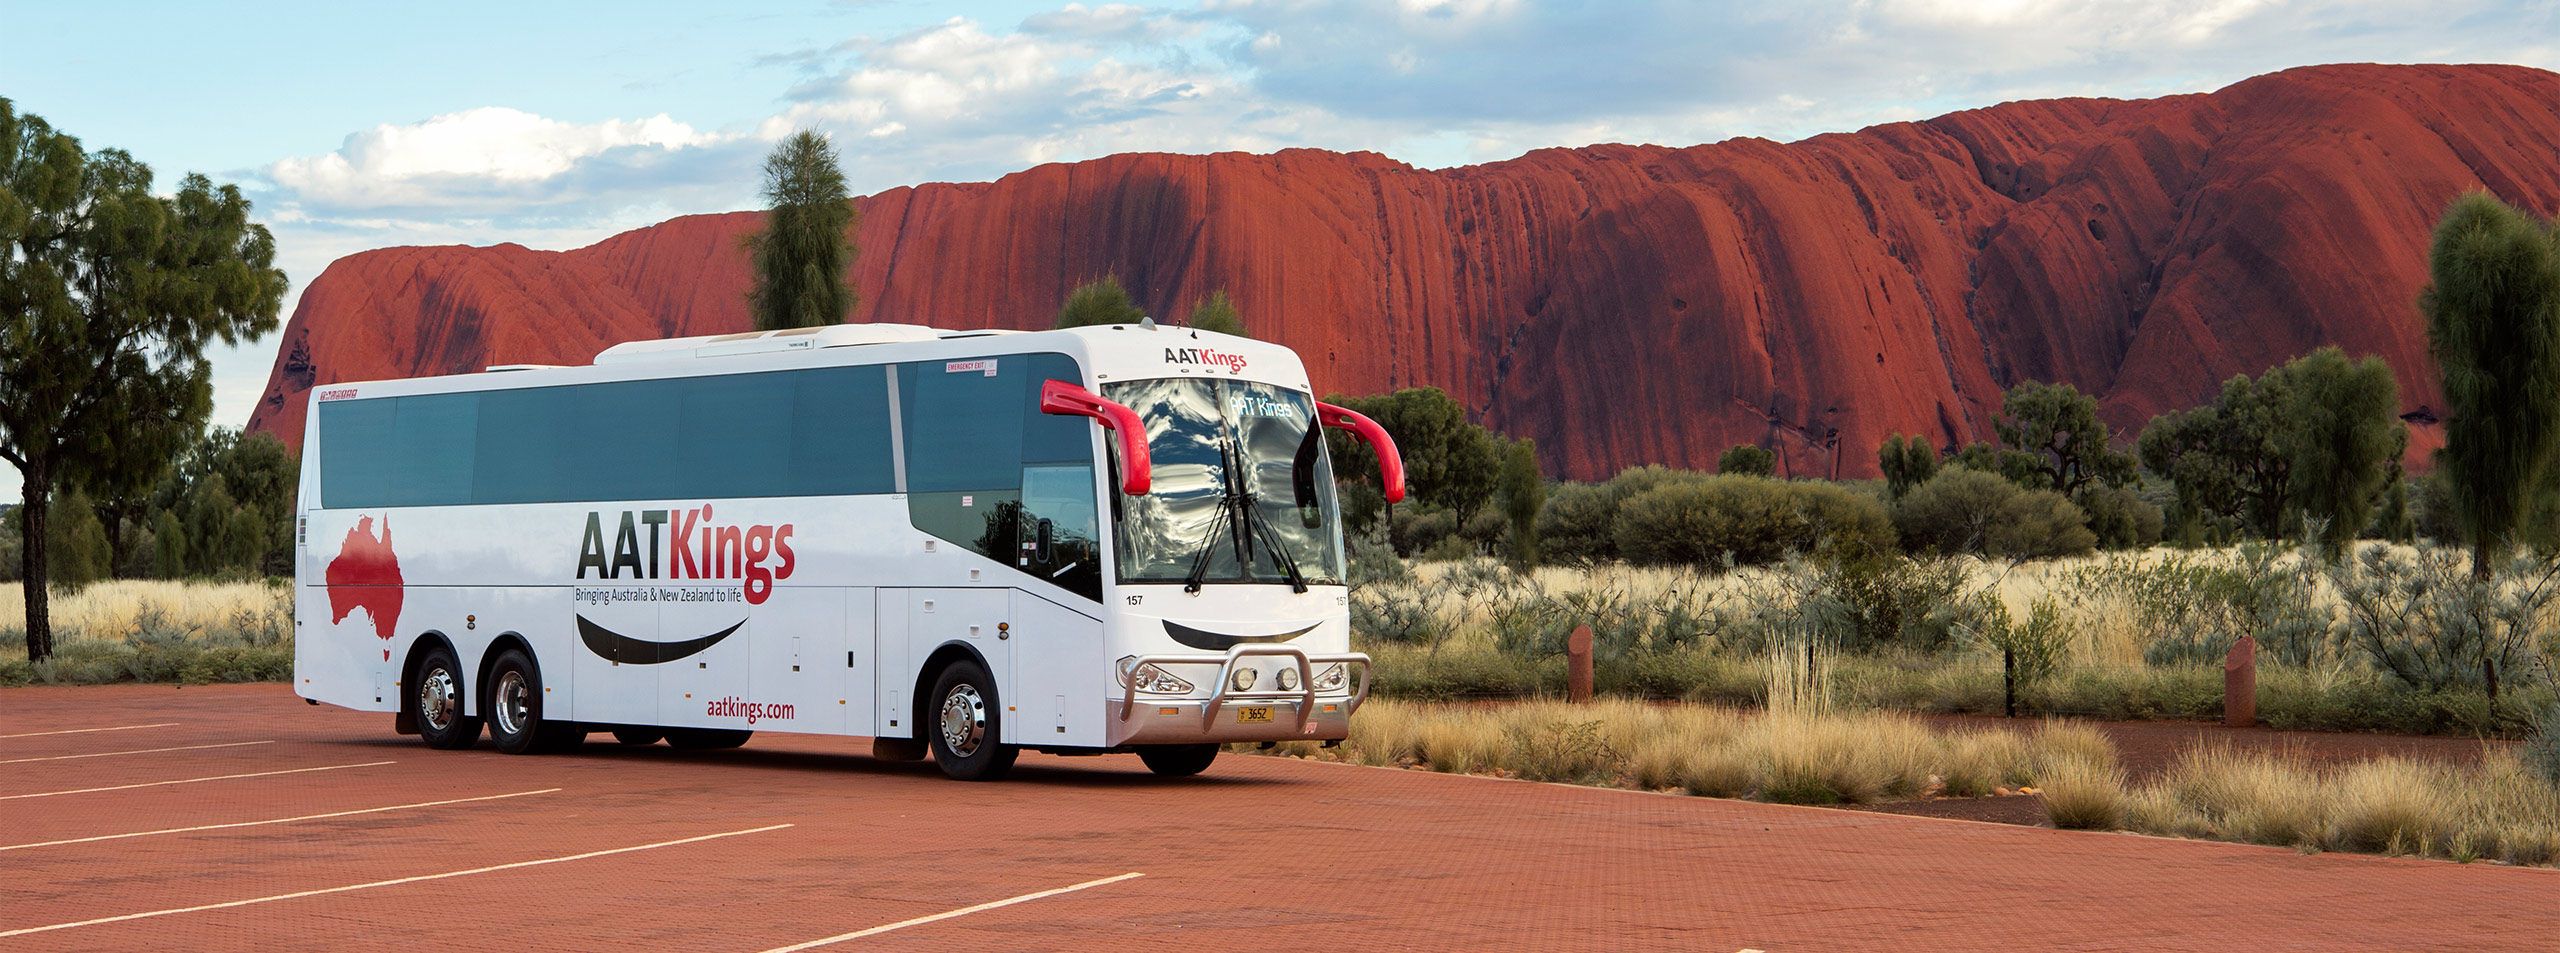 AAT Kings Coach at Uluru